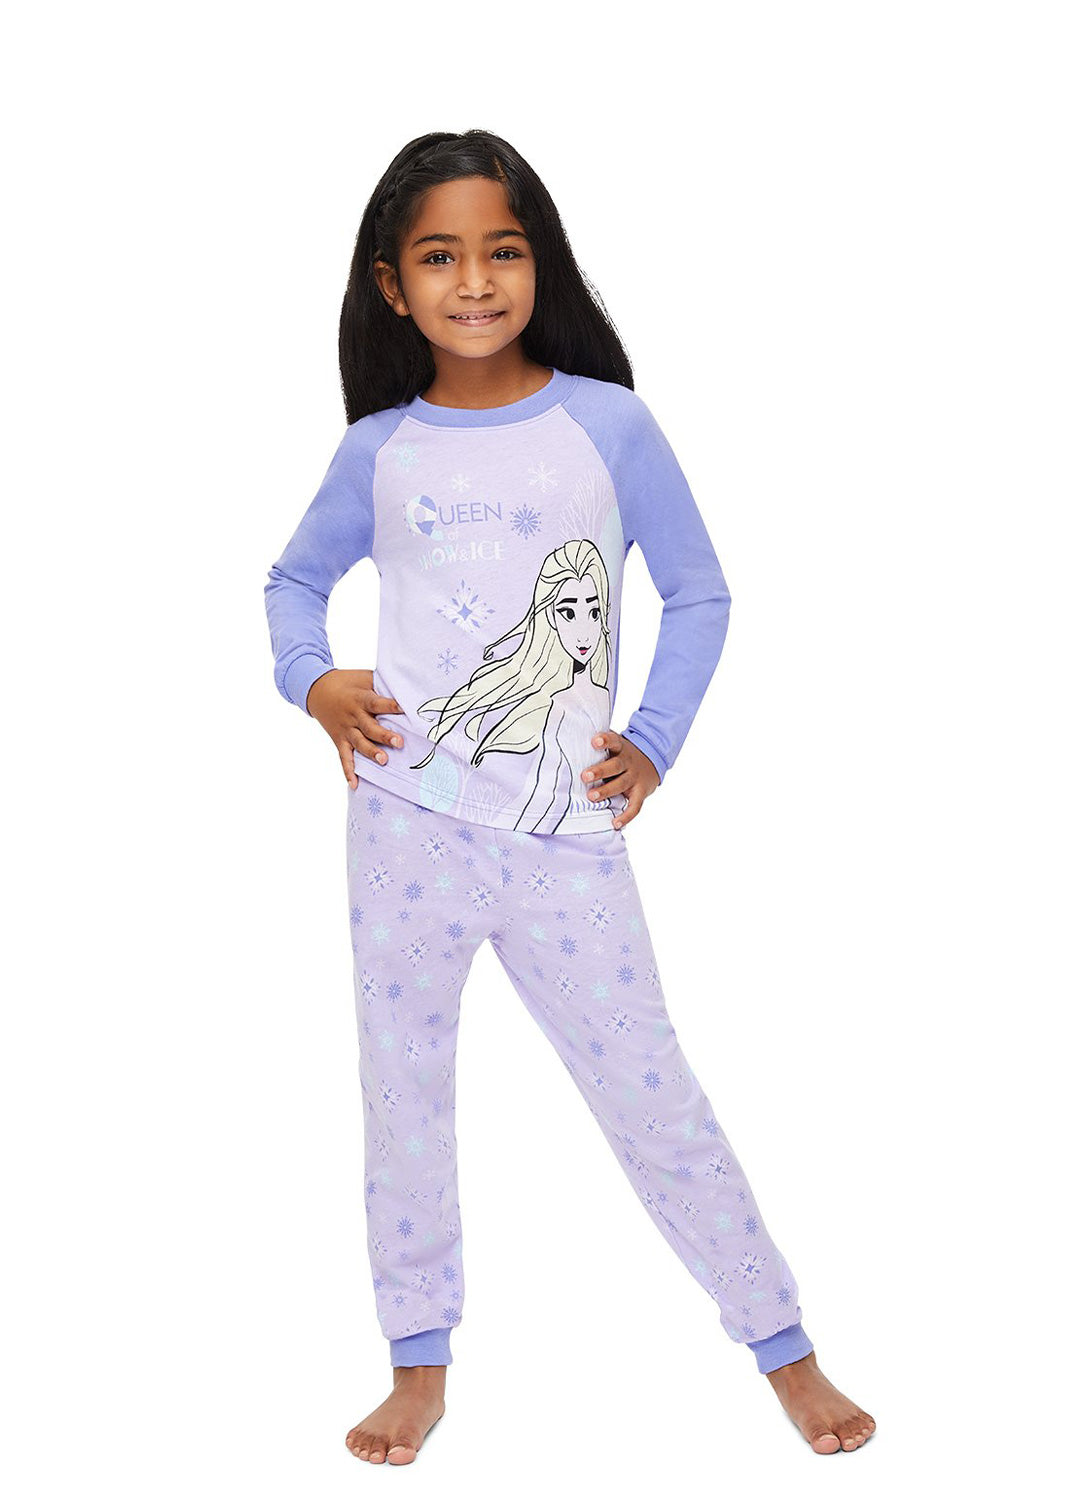 Girl wearing Frozen 2 Pajama Set